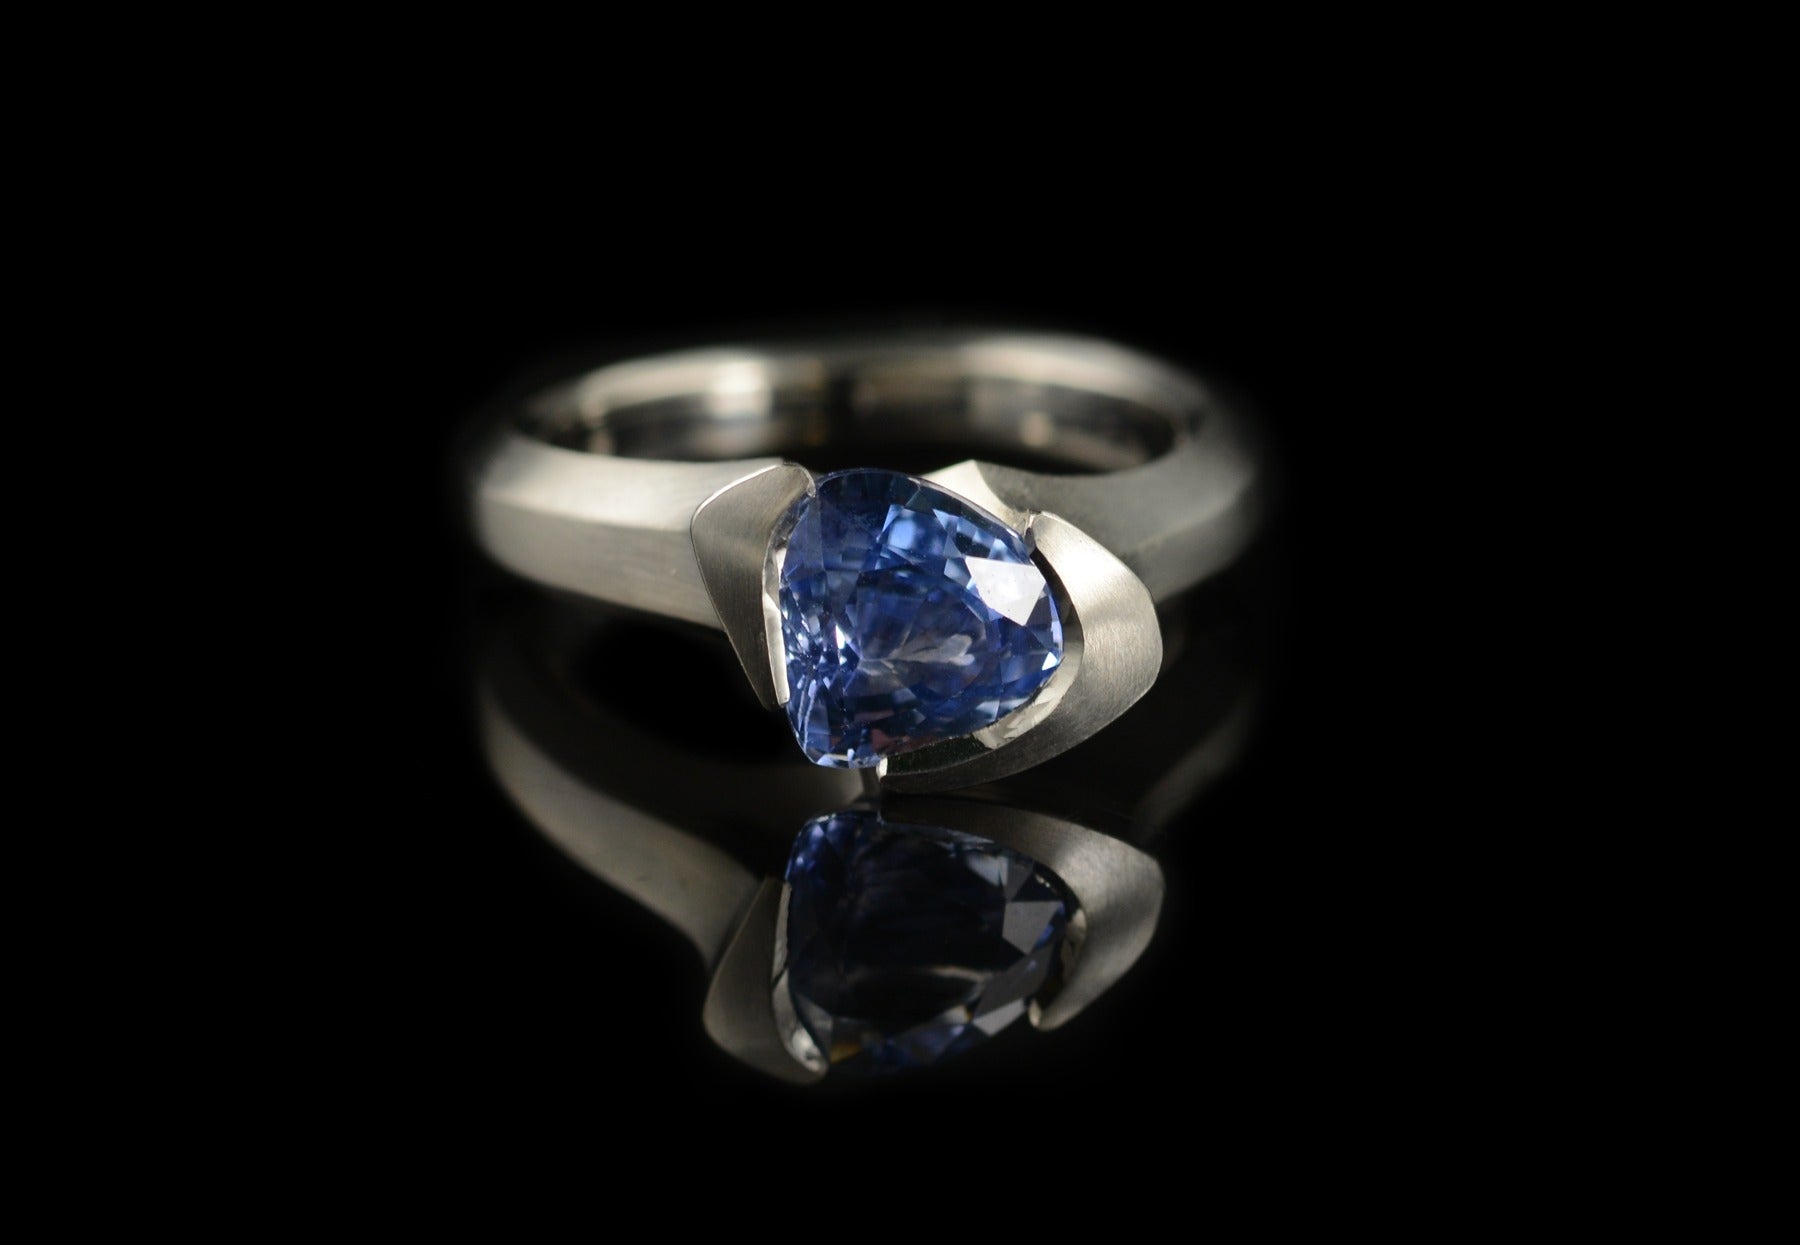 Arris trillion cut blue sapphire and platinum engagement ring